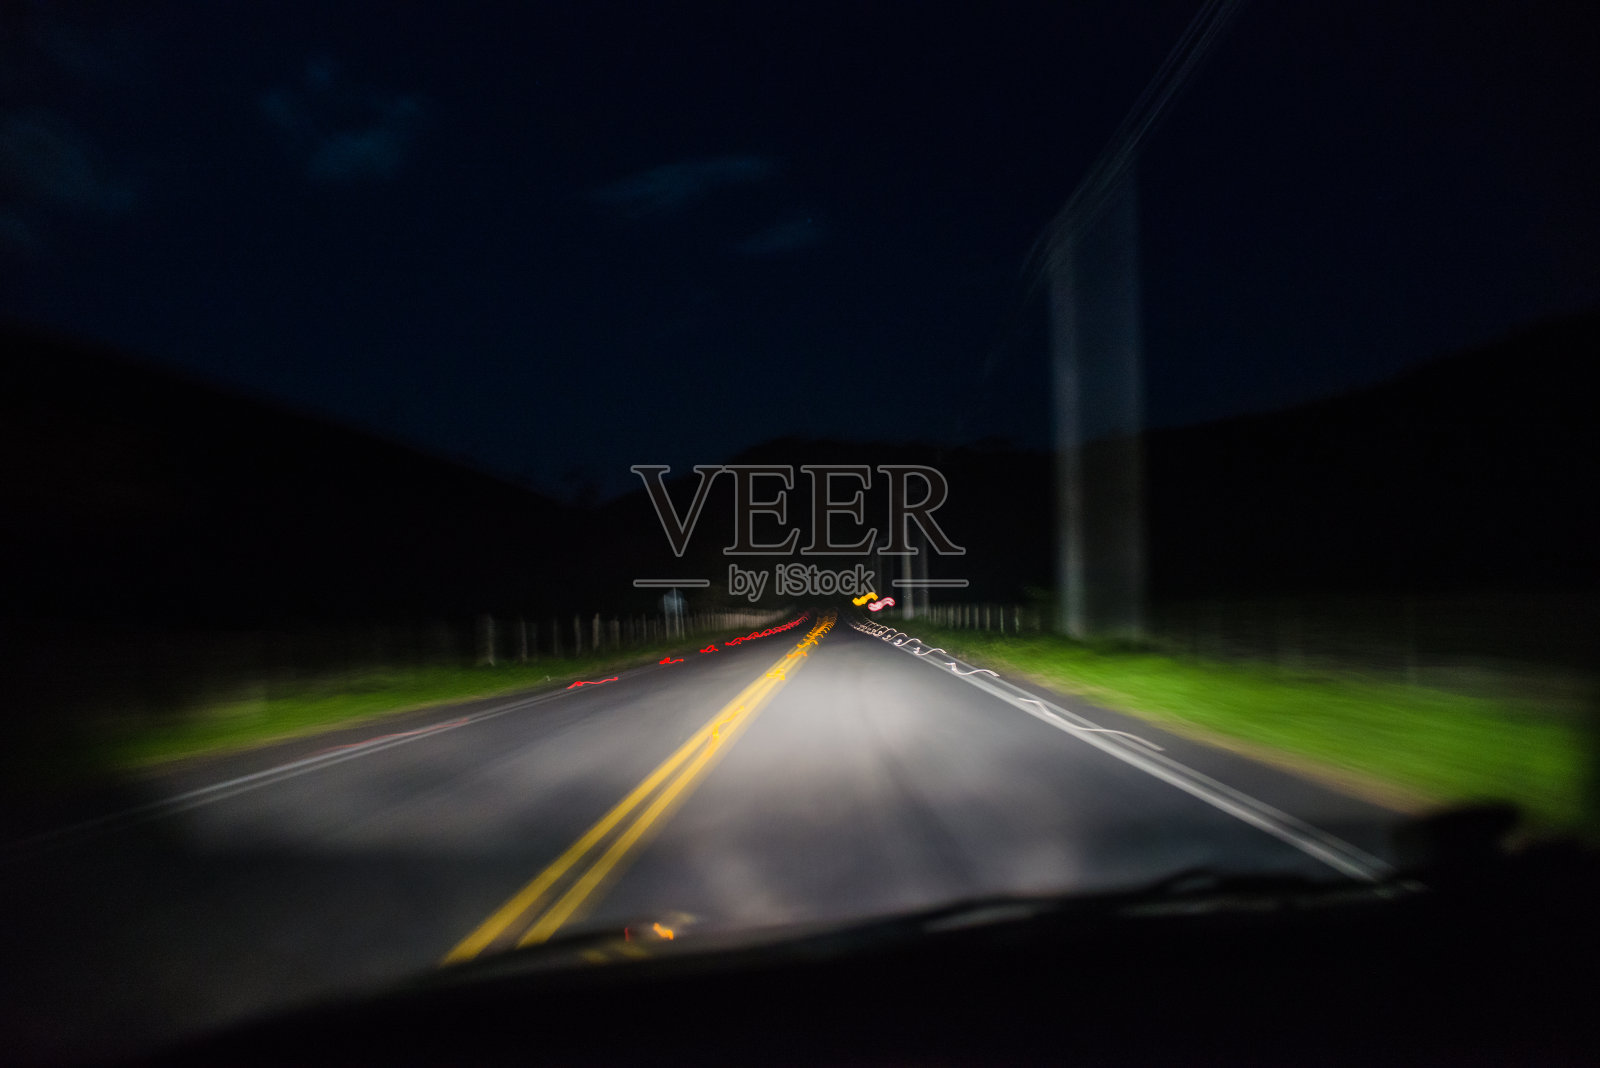 车灯在夜晚照亮道路照片摄影图片